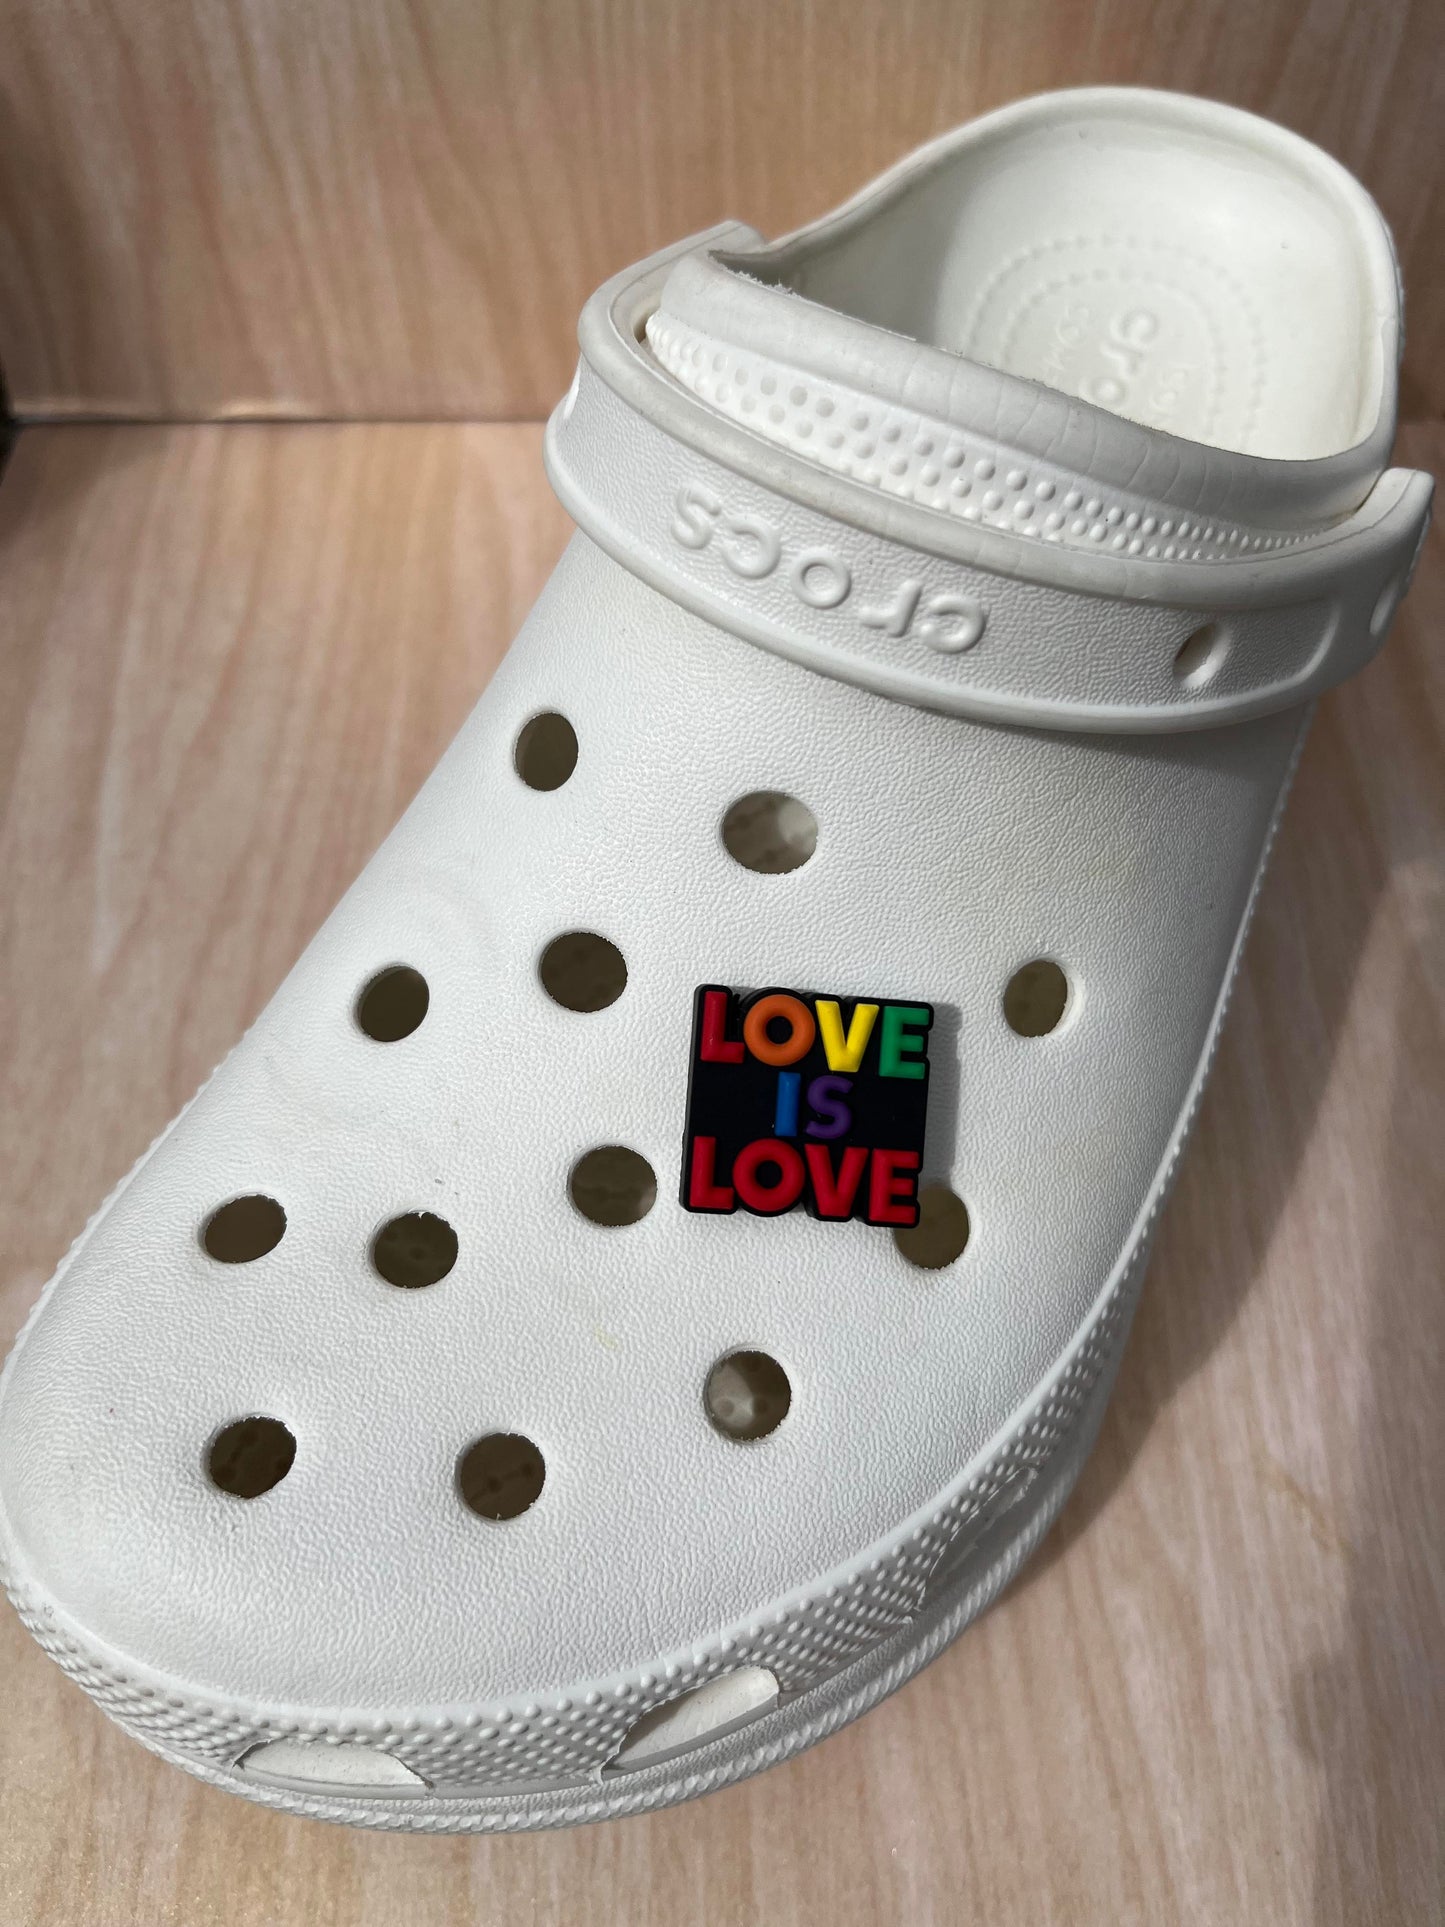 Love is Love Shoe Charm